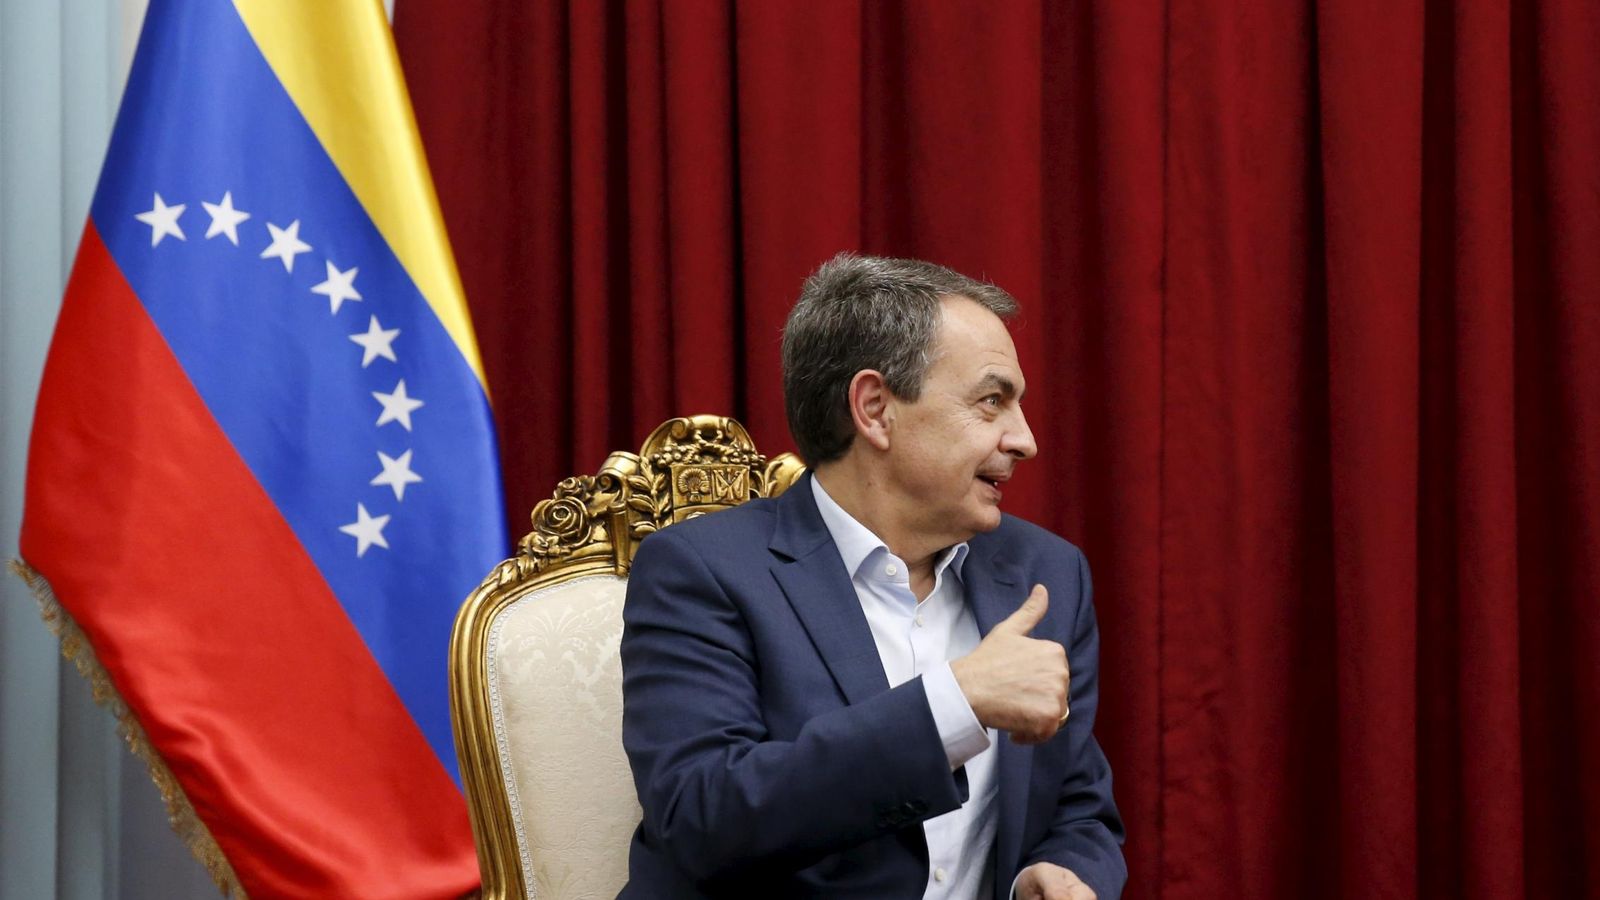 Foto: Zapatero levanta el pulgar durante un encuentro con Maduro en el Palacio de Miraflores en diciembre de 2015 (Reuters)